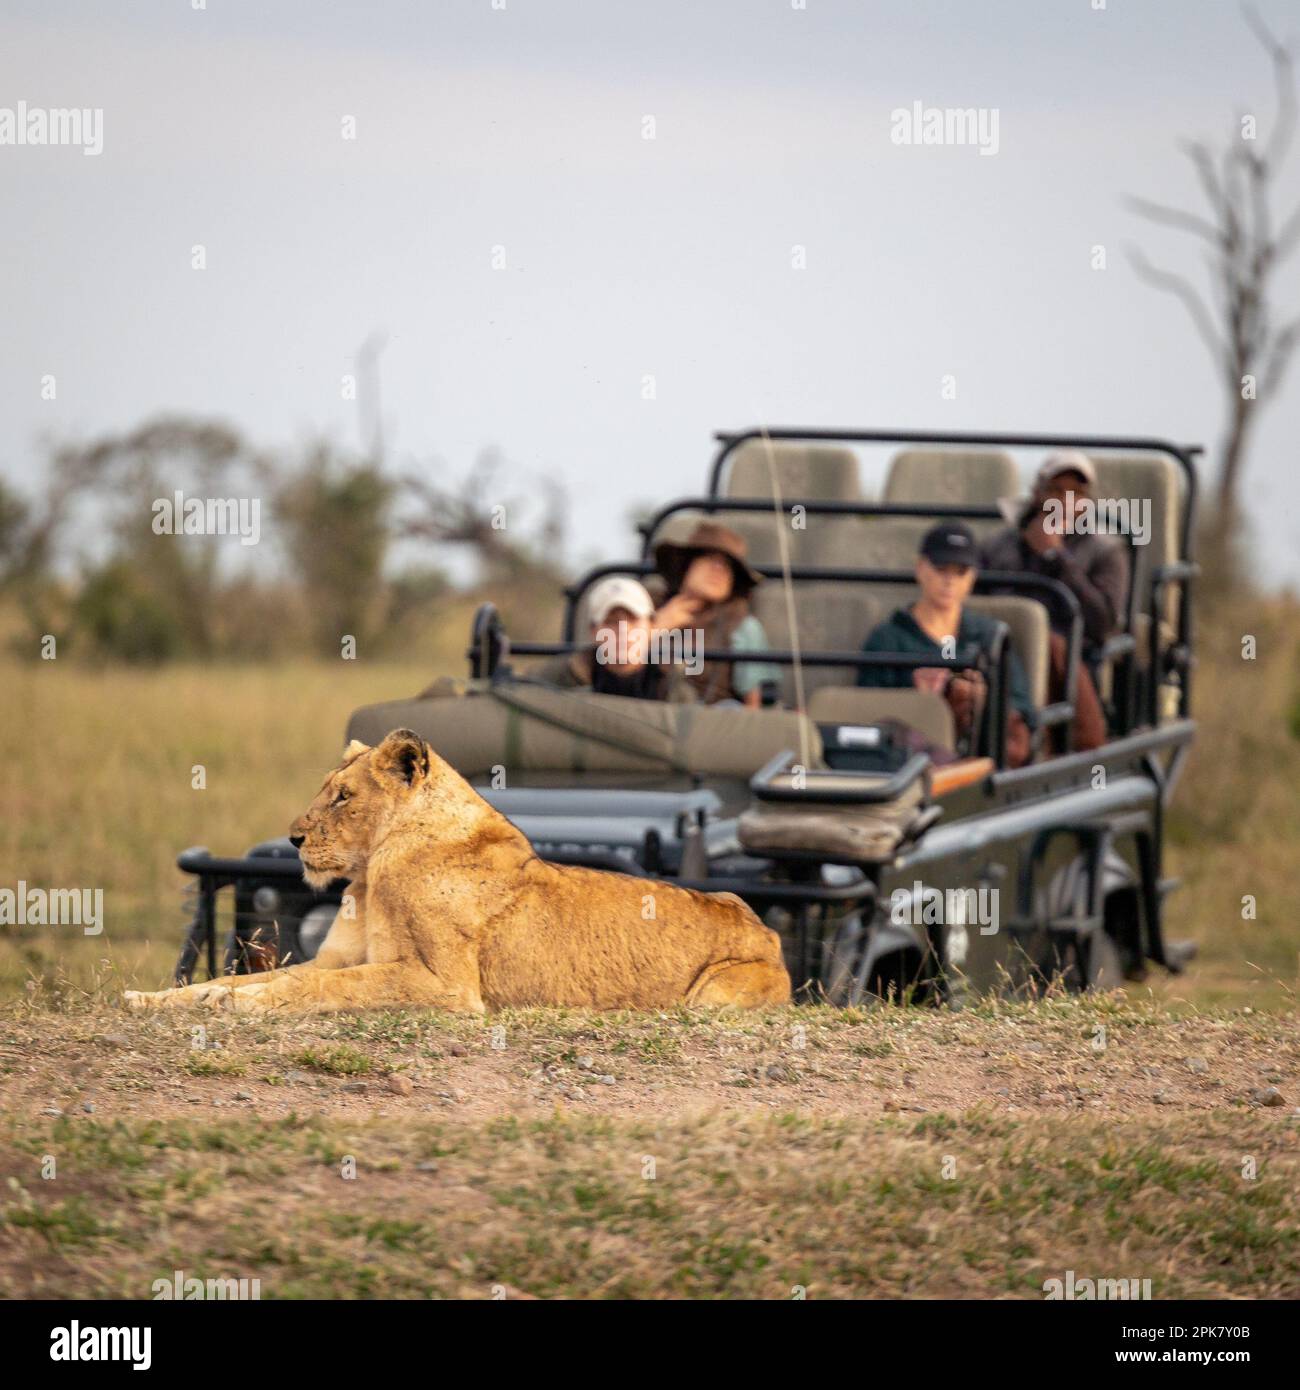 Eine Löwin, Pathera leo, lag vor einem Safari-Wildfahrzeug. Stockfoto